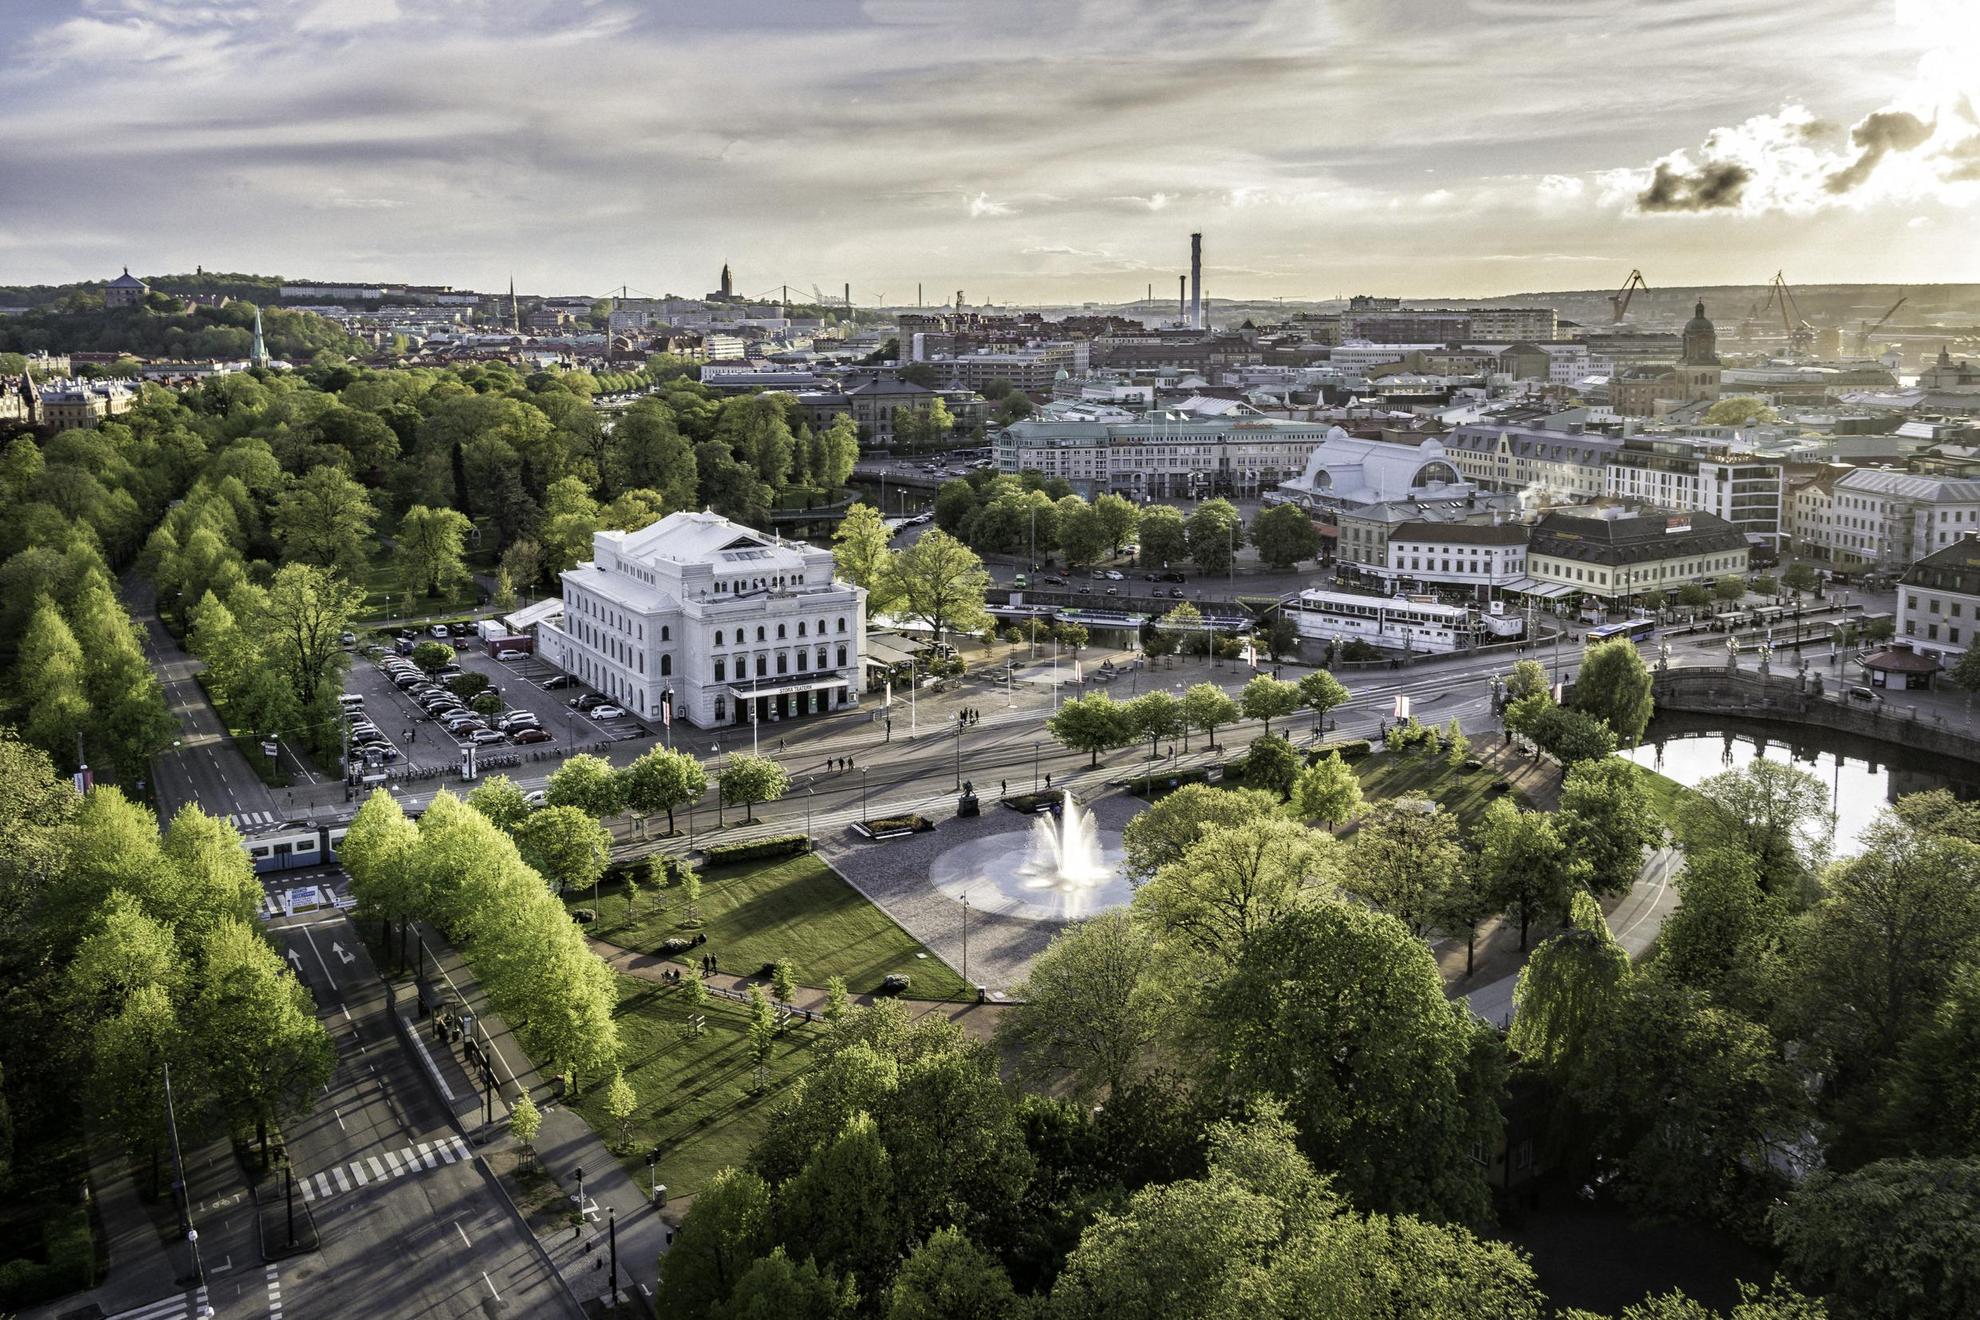 Luchtfoto van Göteborg. Een groot wit gebouw, een fontein en weelderig groen op de voorgrond.